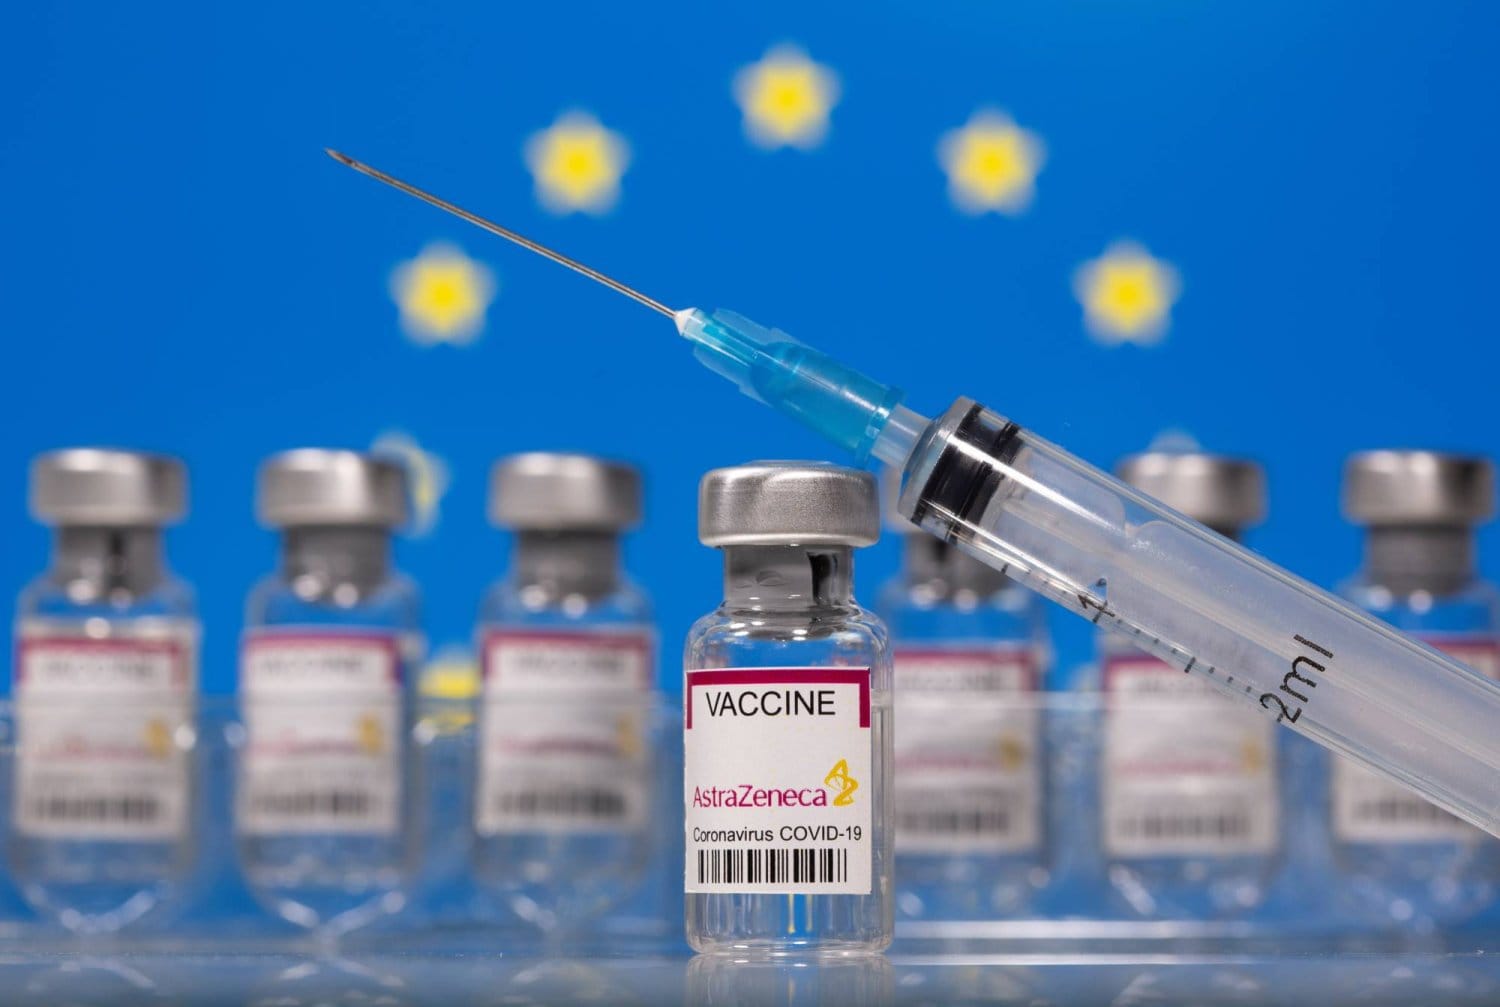 آثار جانبية مميتة للقاح "أسترازينيكا".. فما هي أعراض الإصابة؟